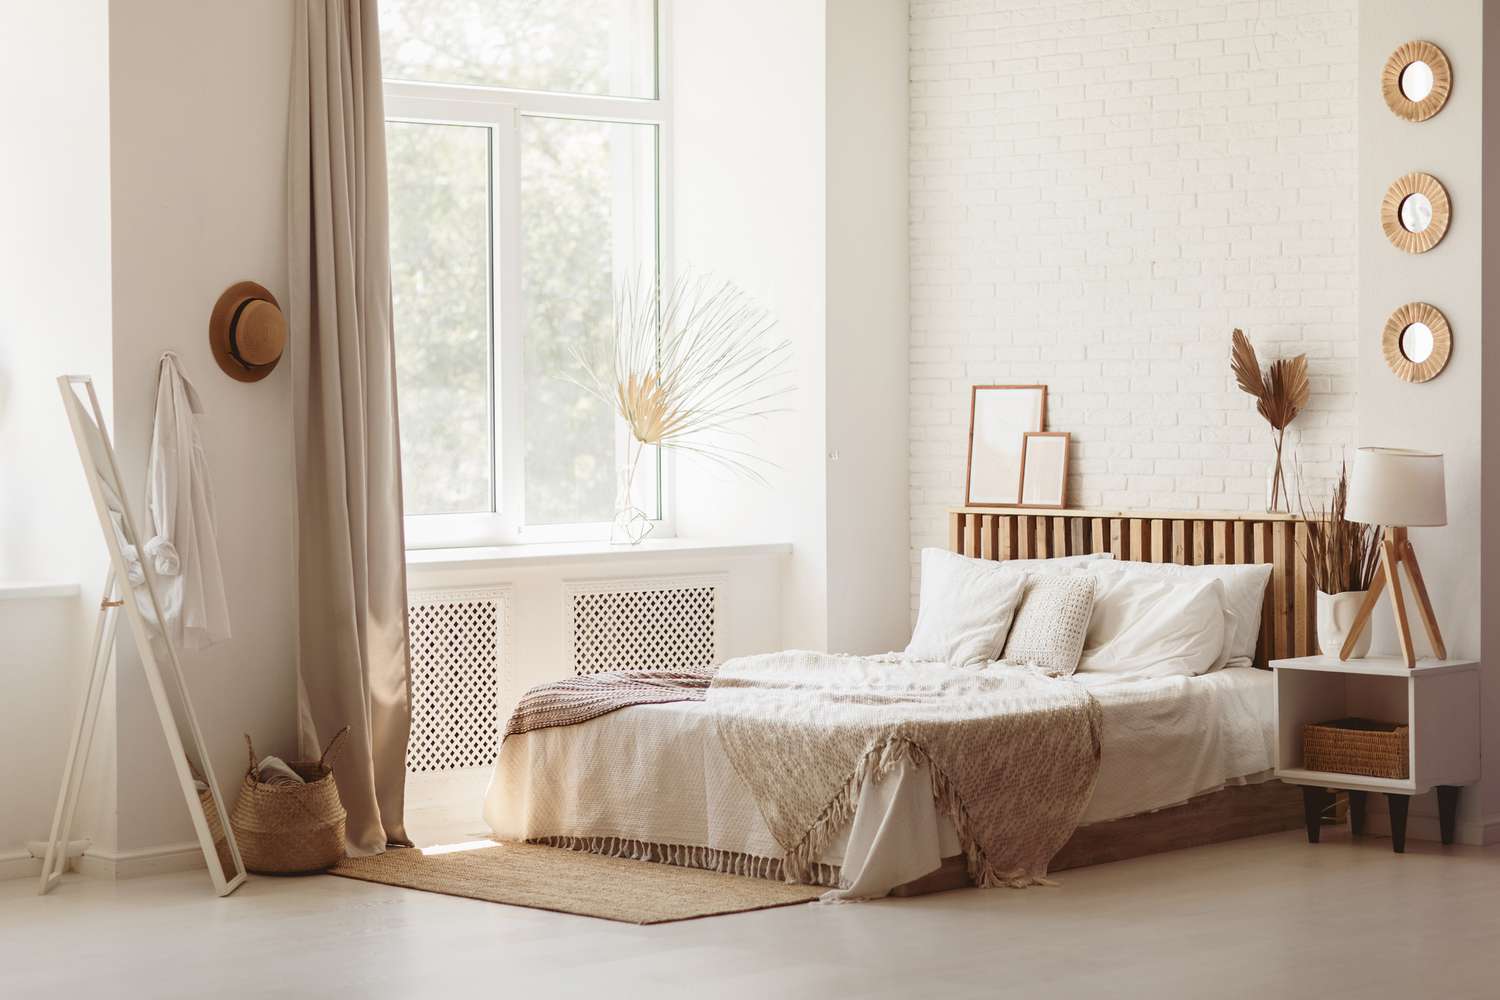 Luminoso y amplio dormitorio con pared blanca y muebles de madera eco DIY. Acogedor dormitorio luminoso de estilo rústico.